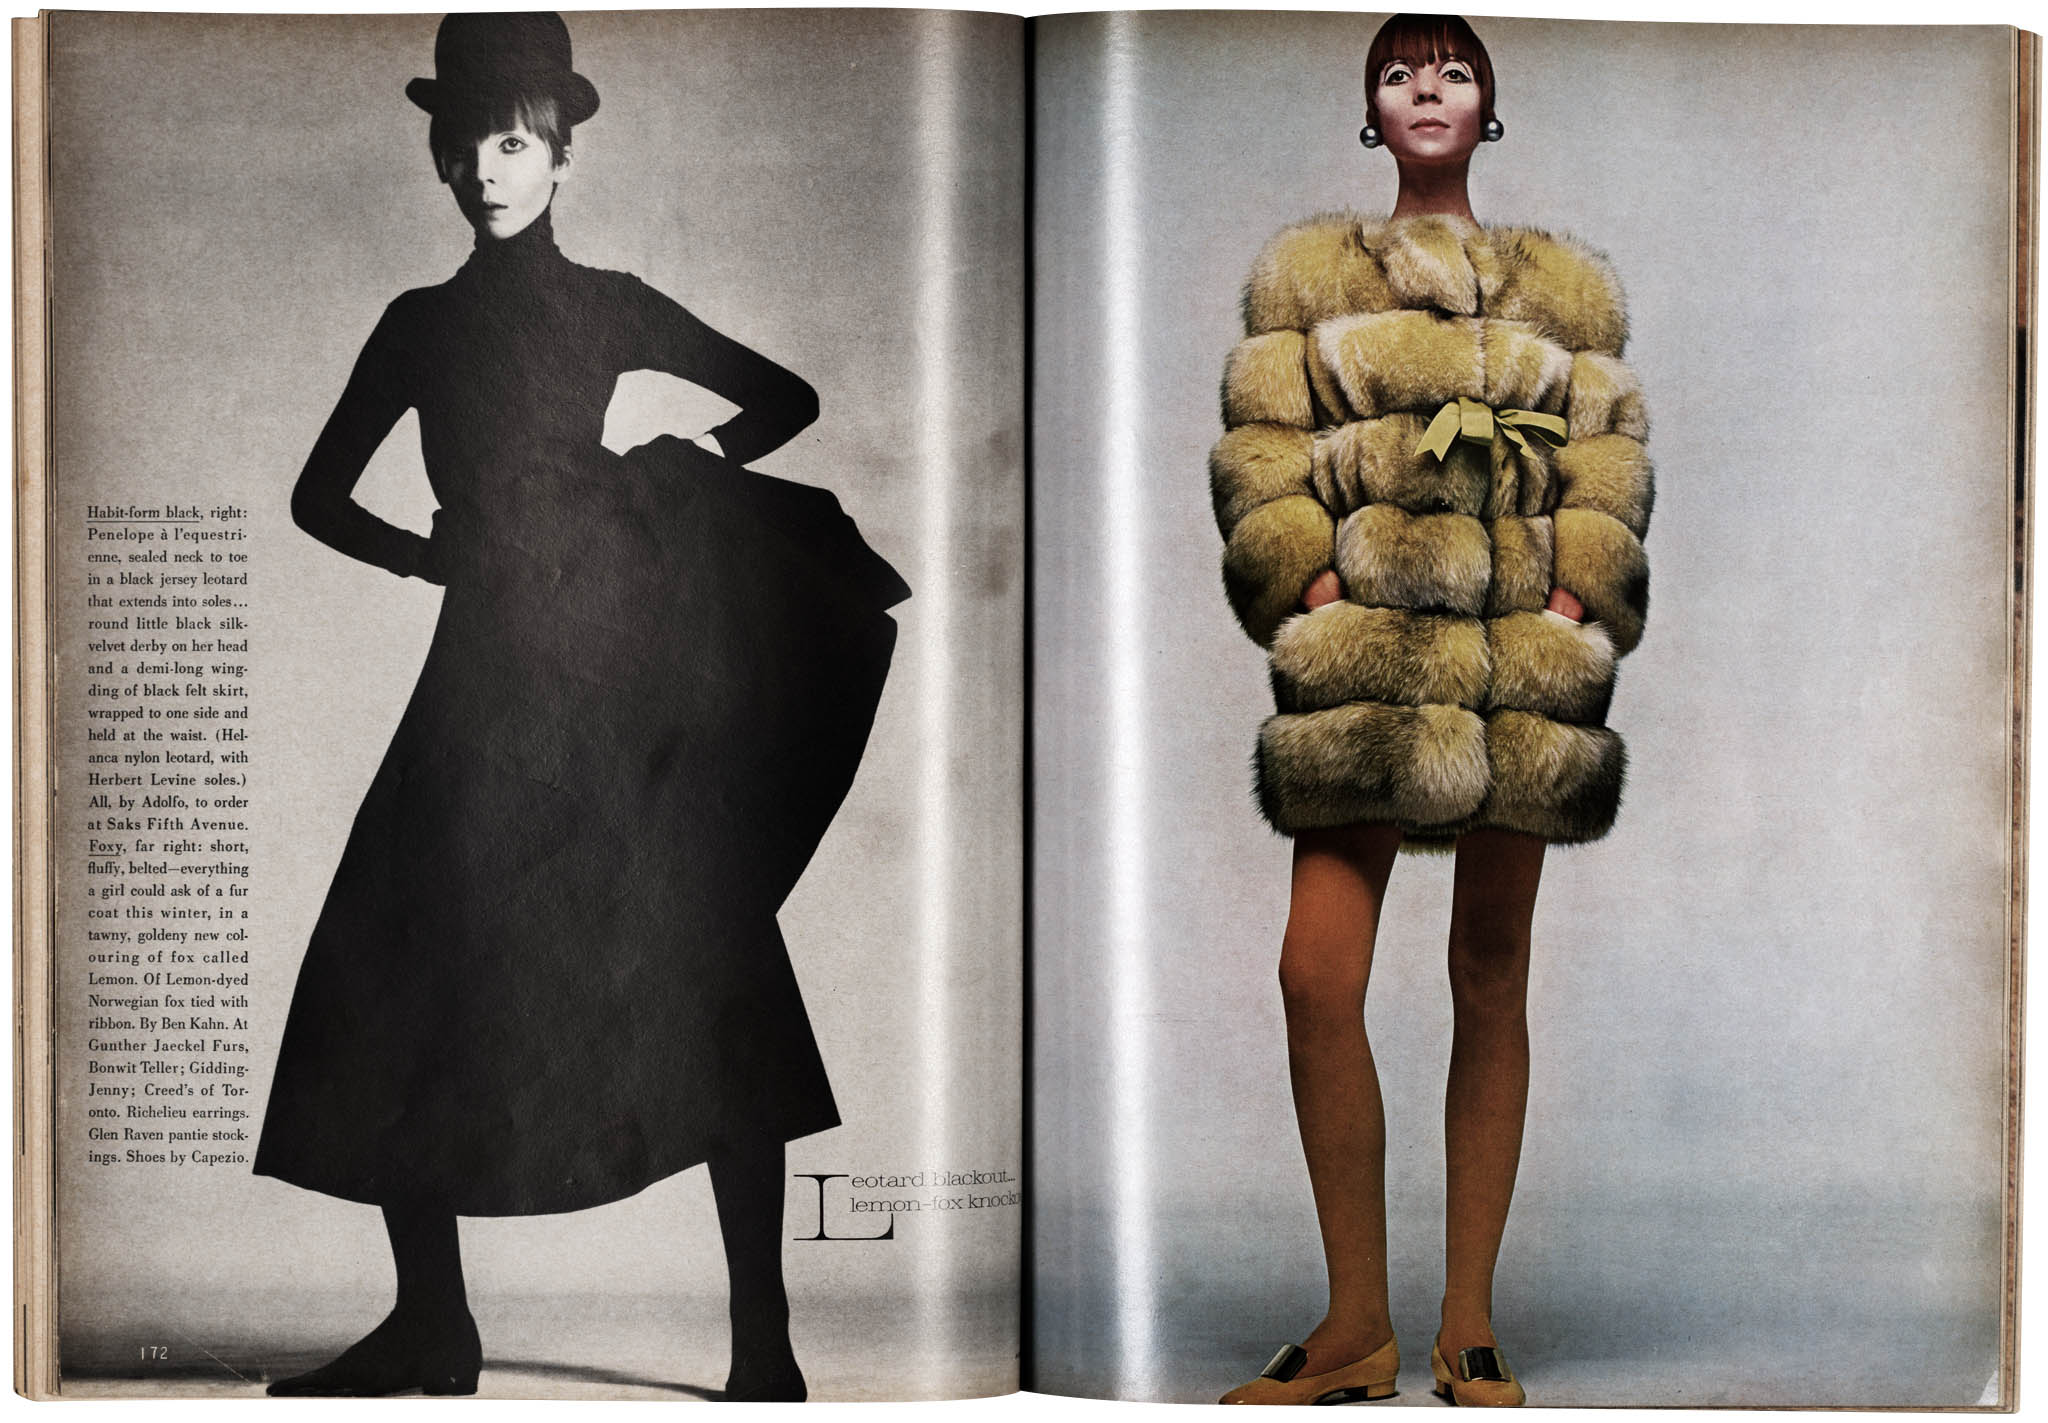 Vogue_10_1967_Spread_p172-173_Ap.jpg